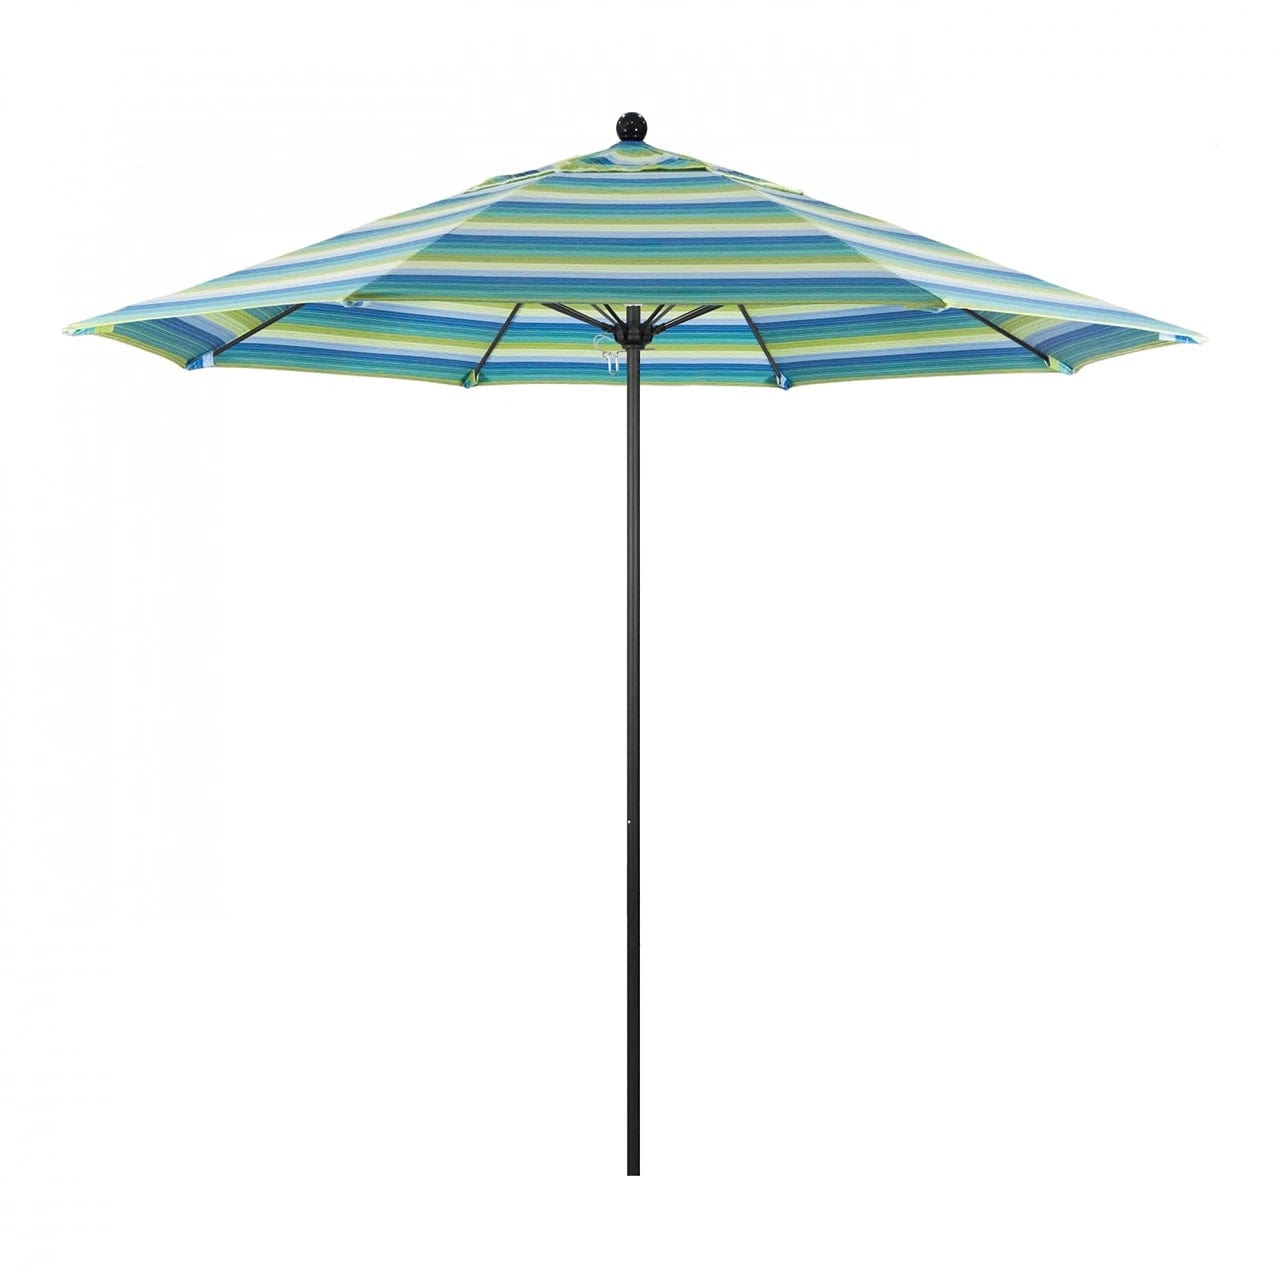 Umbra 9' Umbrella